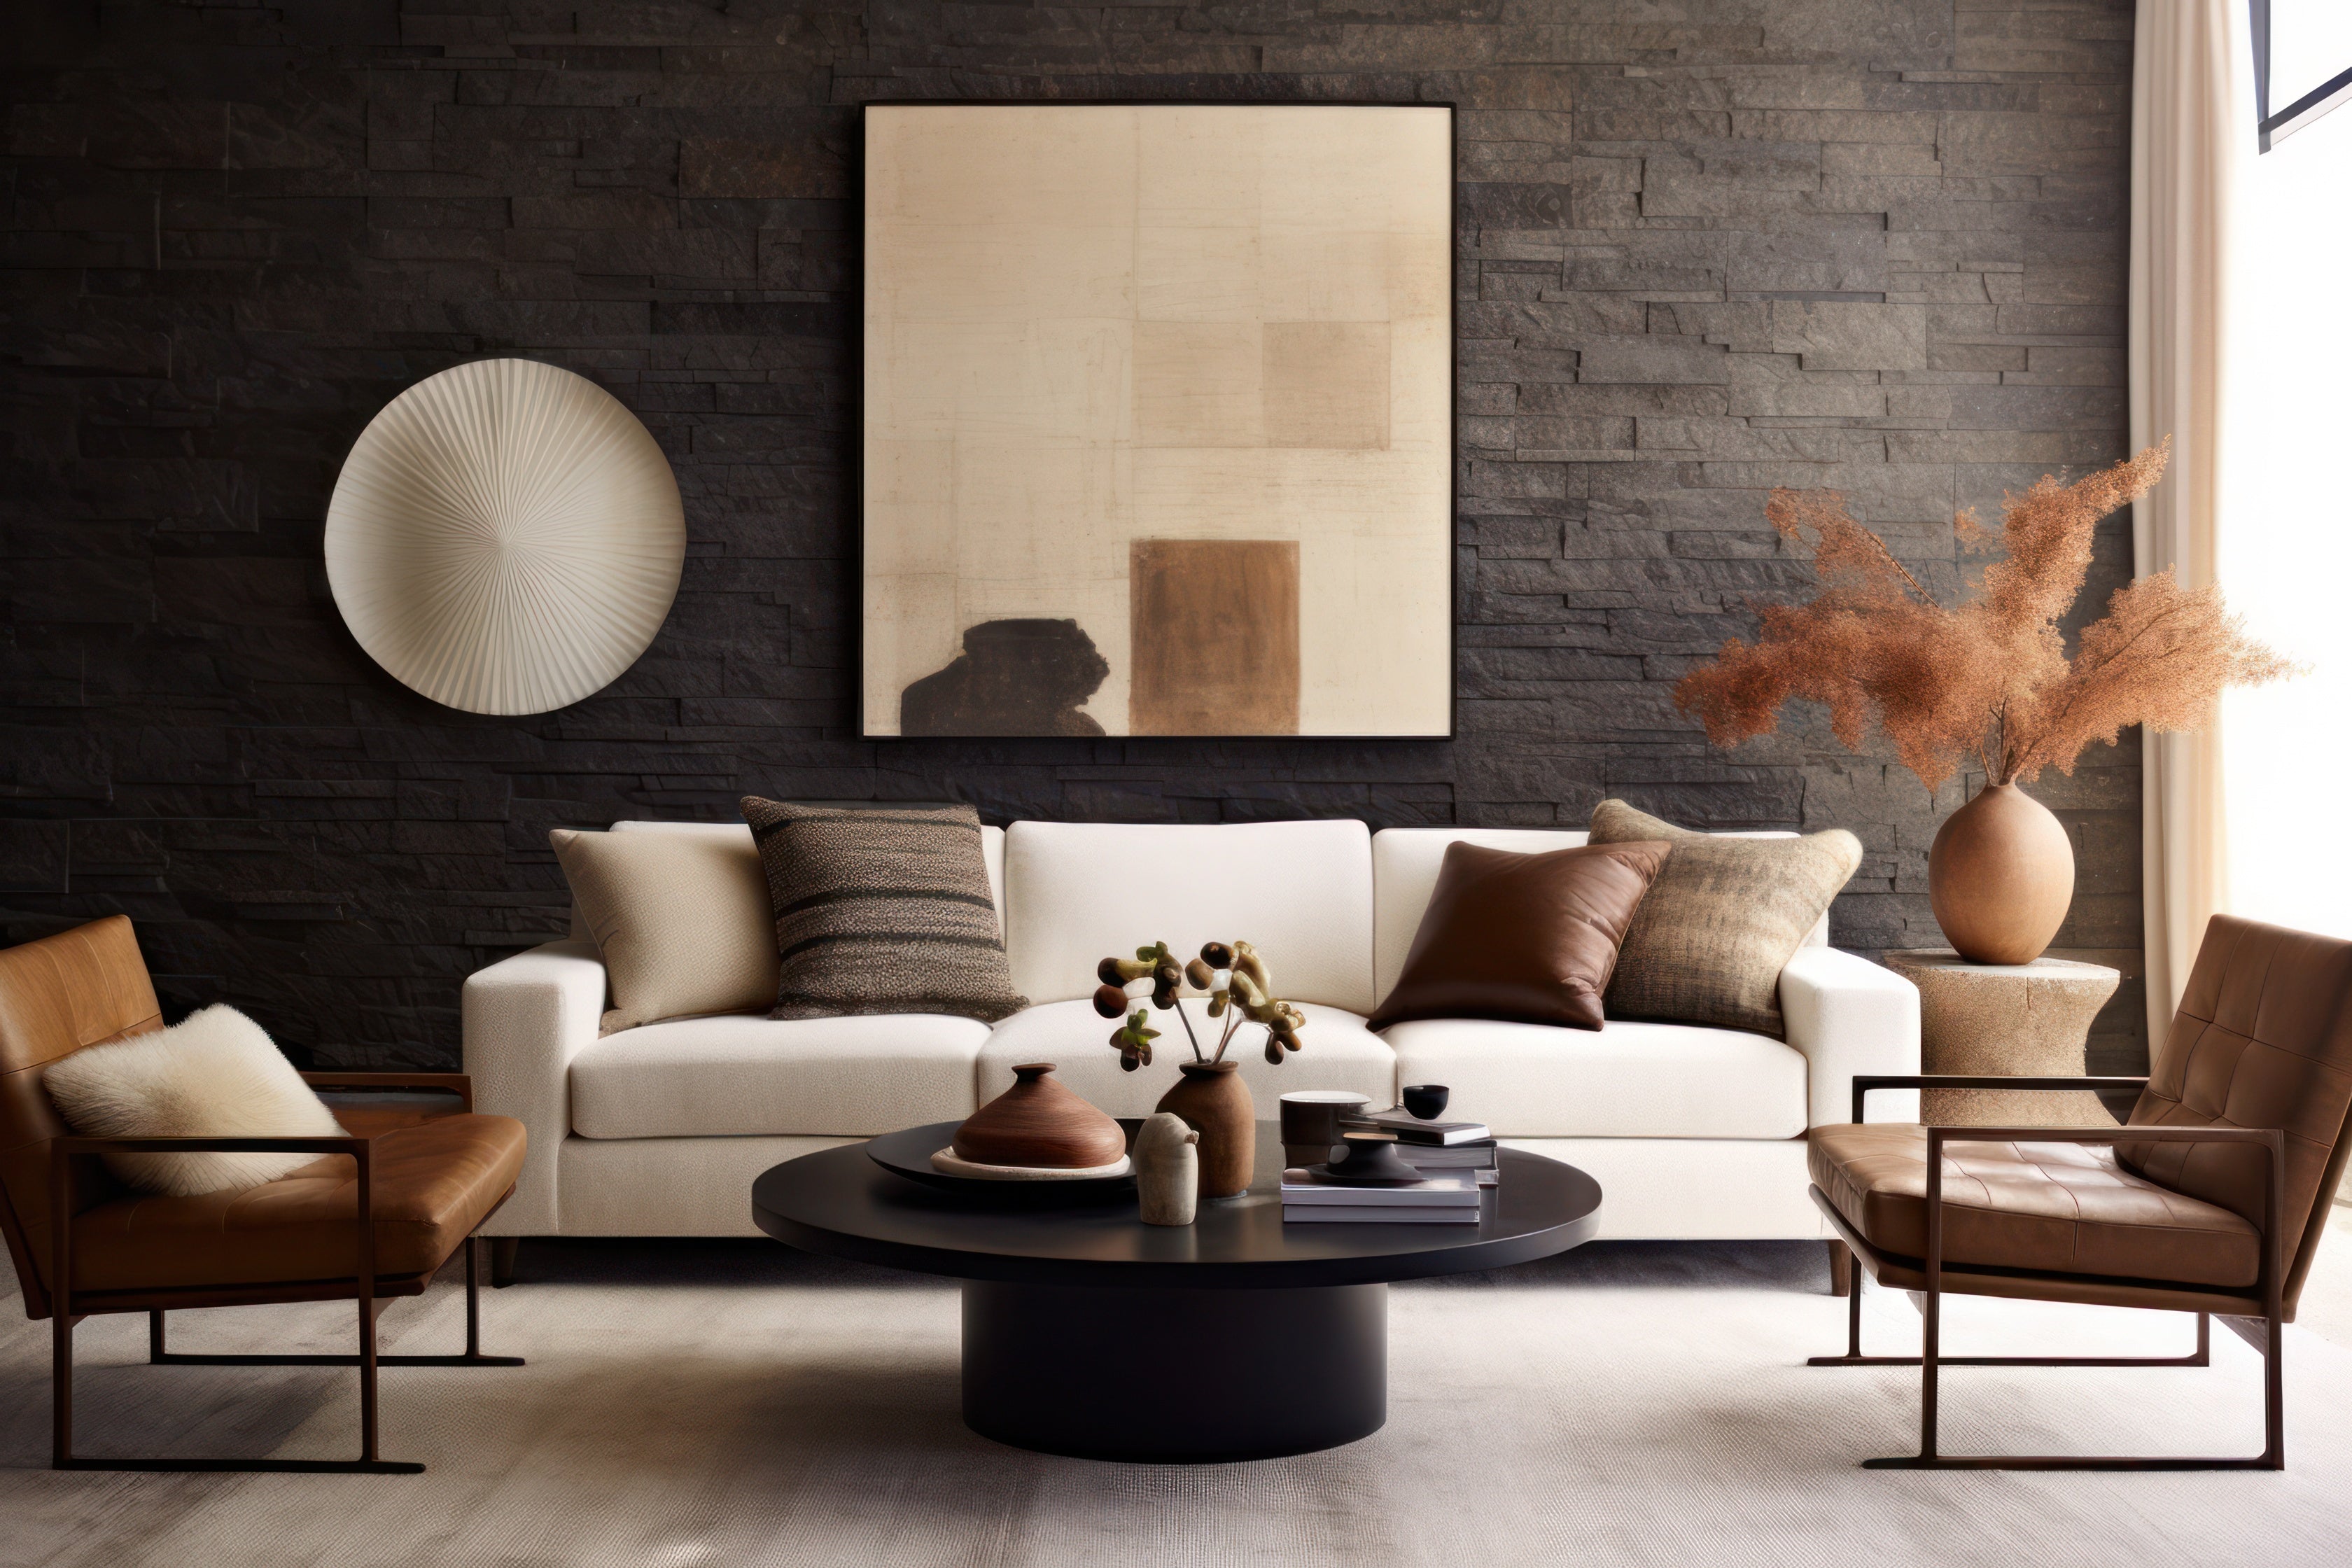 Mondern minimalist living room in neutral colors.